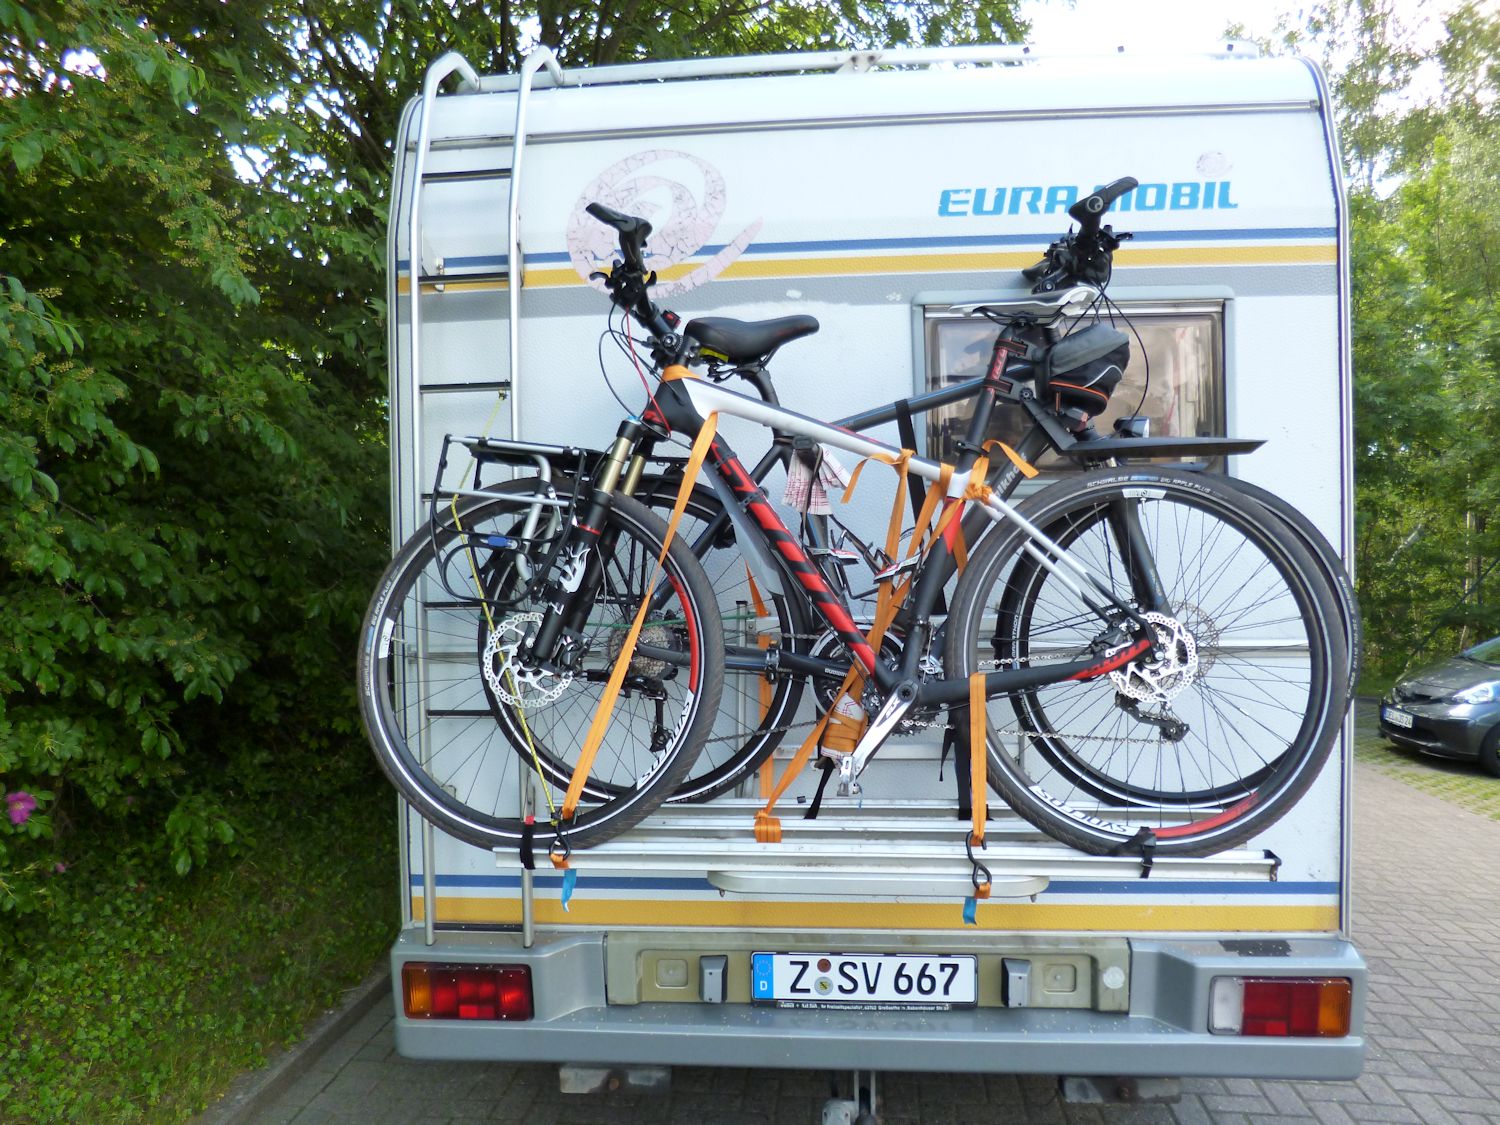 Wohnmobil mit Fahrradträger und zwei Fahrrädern